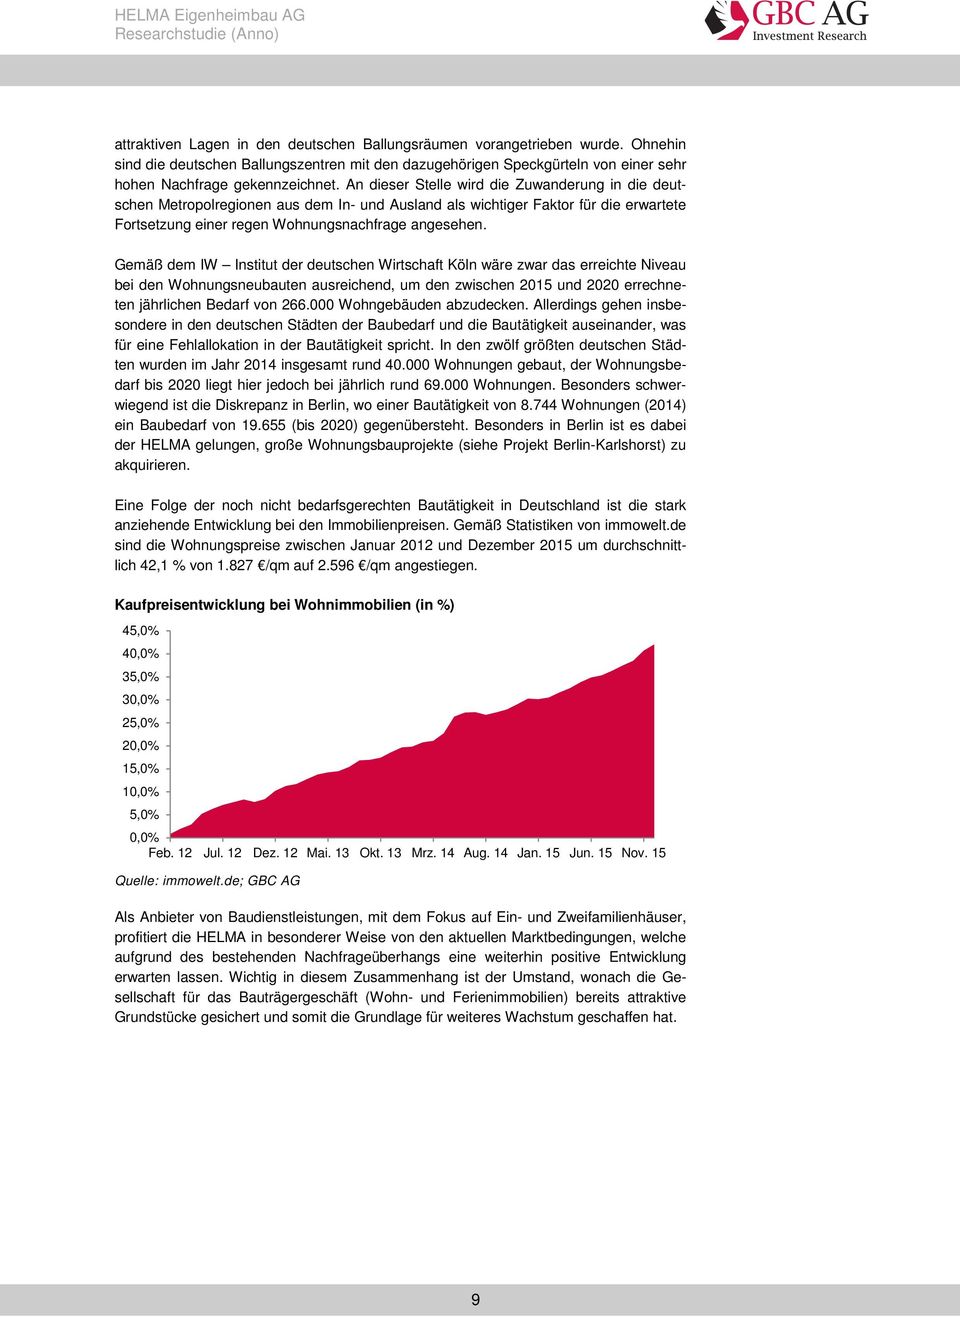 Gemäß dem IW Institut der deutschen Wirtschaft Köln wäre zwar das erreichte Niveau bei den Wohnungsneubauten ausreichend, um den zwischen 2015 und 2020 errechneten jährlichen Bedarf von 266.